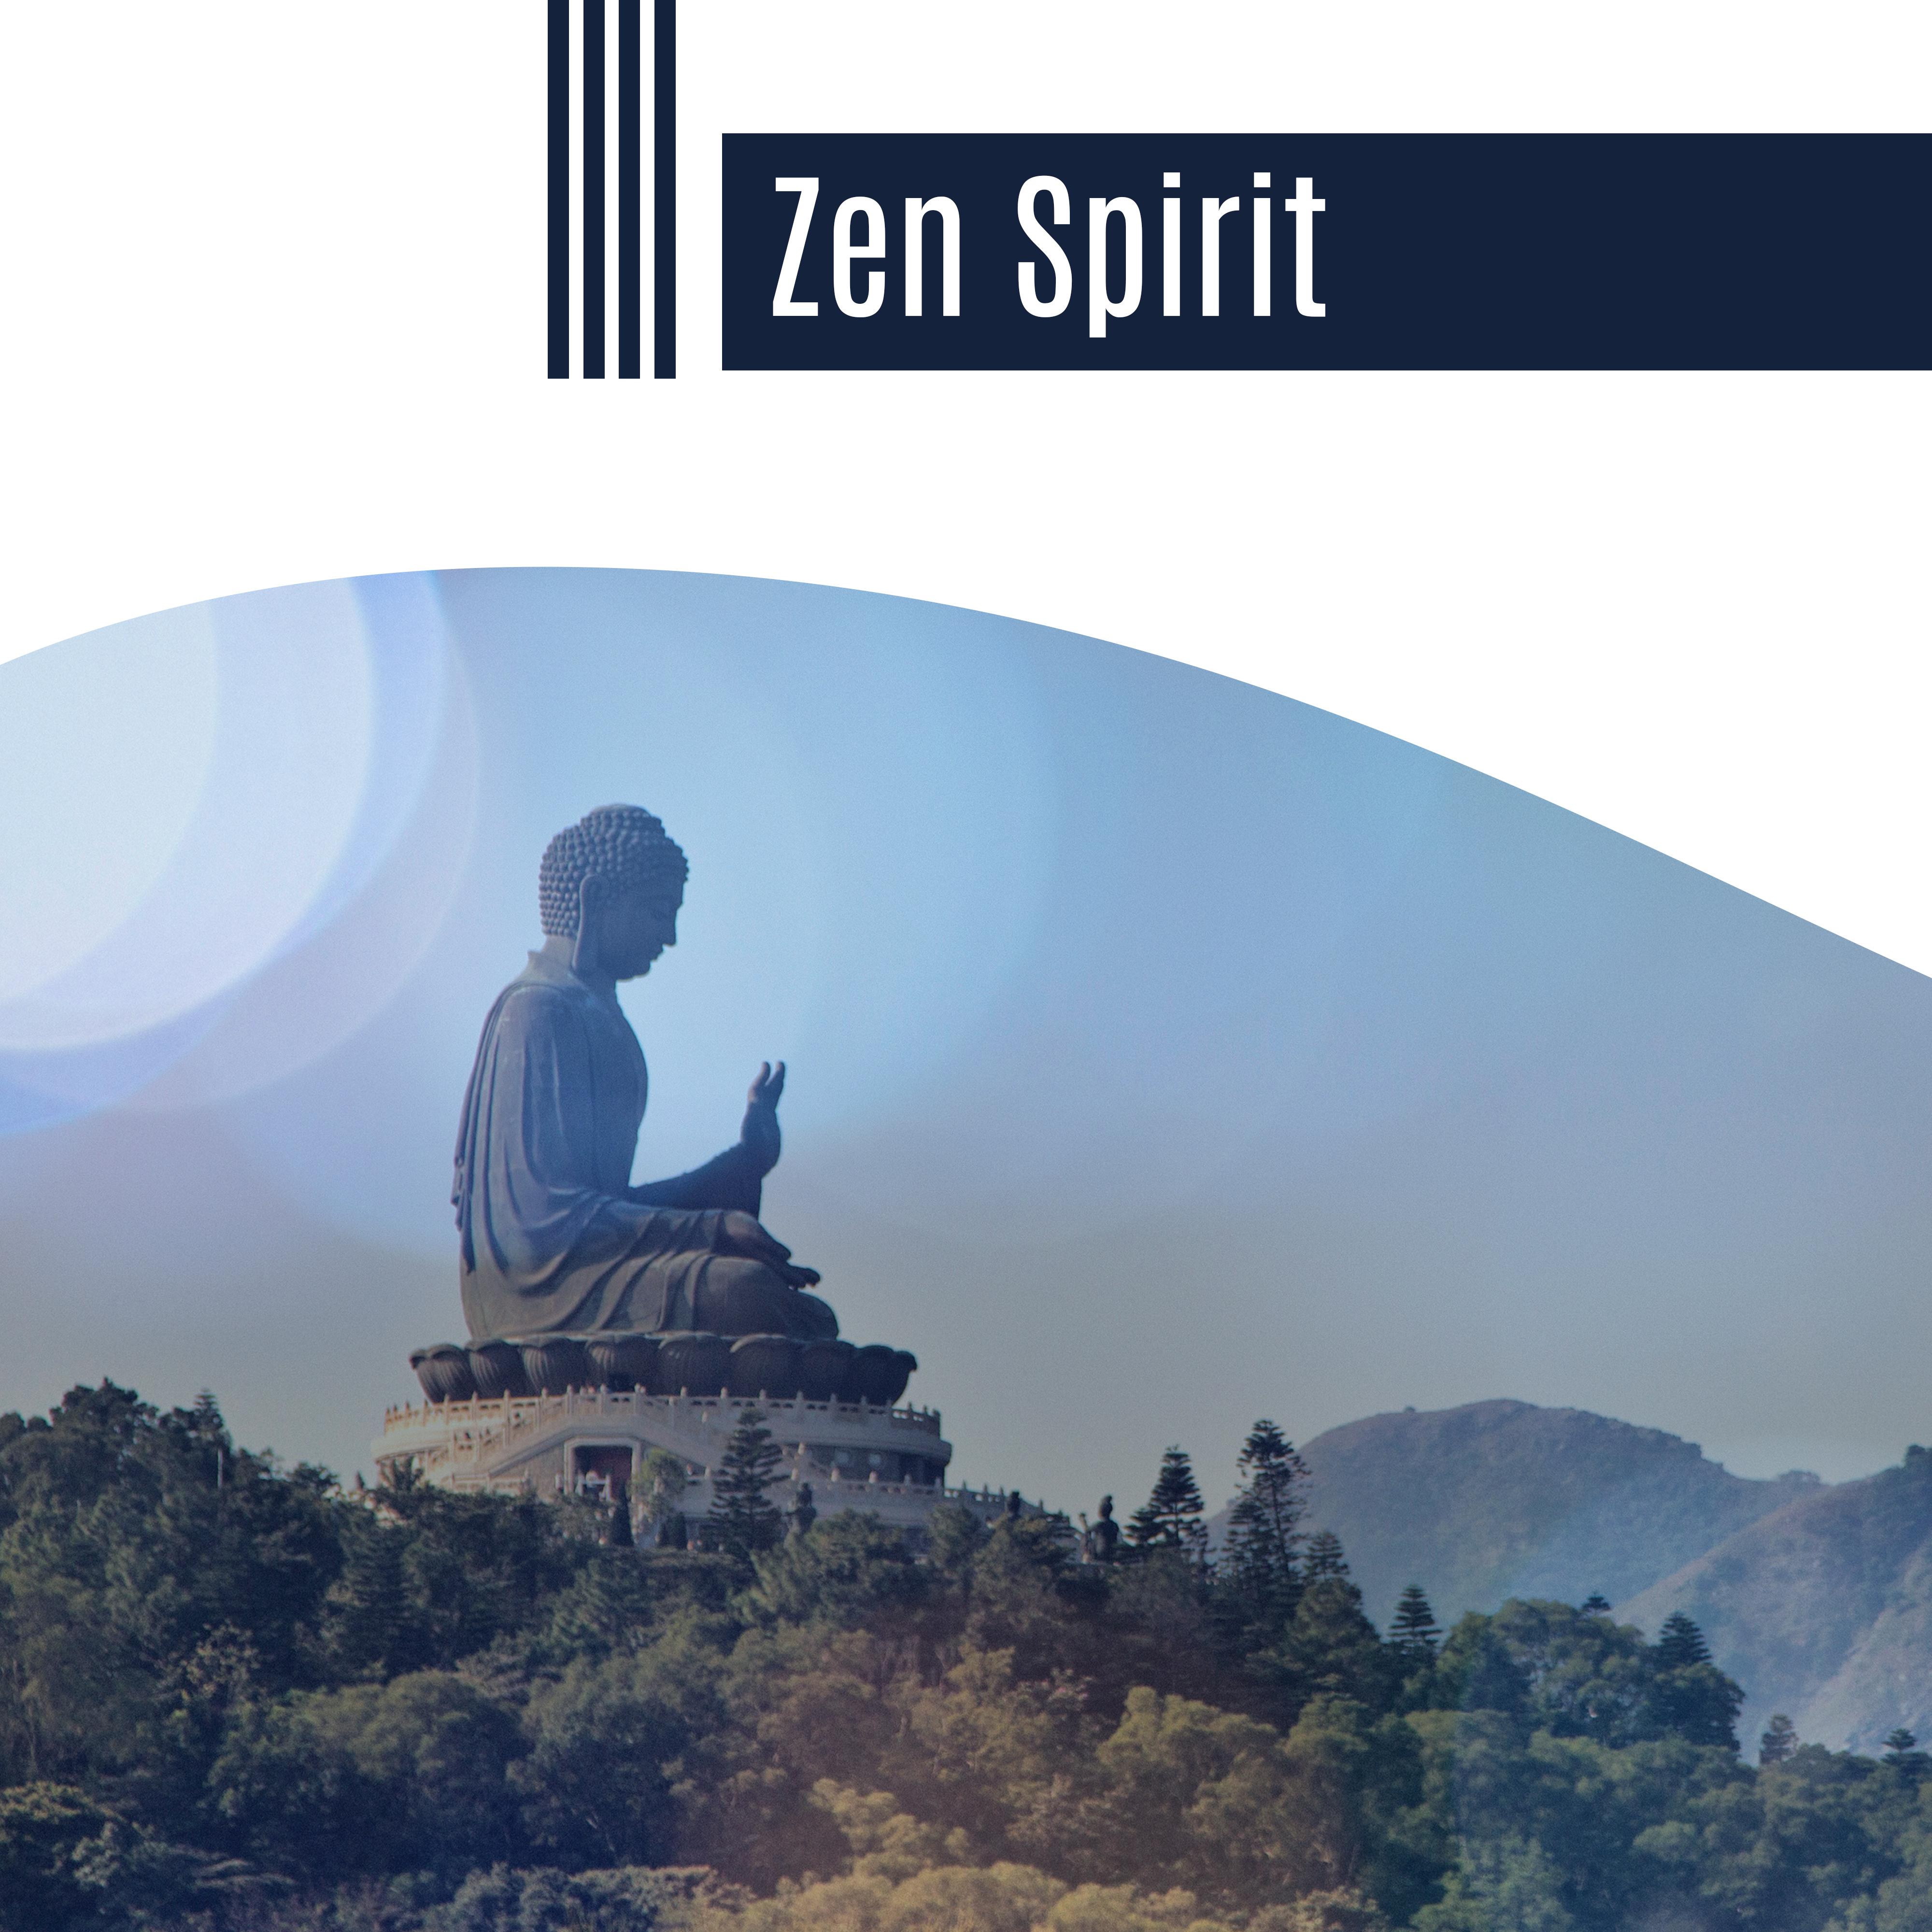 Zen Spirit – Calming Sounds of Nature, Relaxing Music, Wellness, Spa, Massage, Healing Echoes of Nature